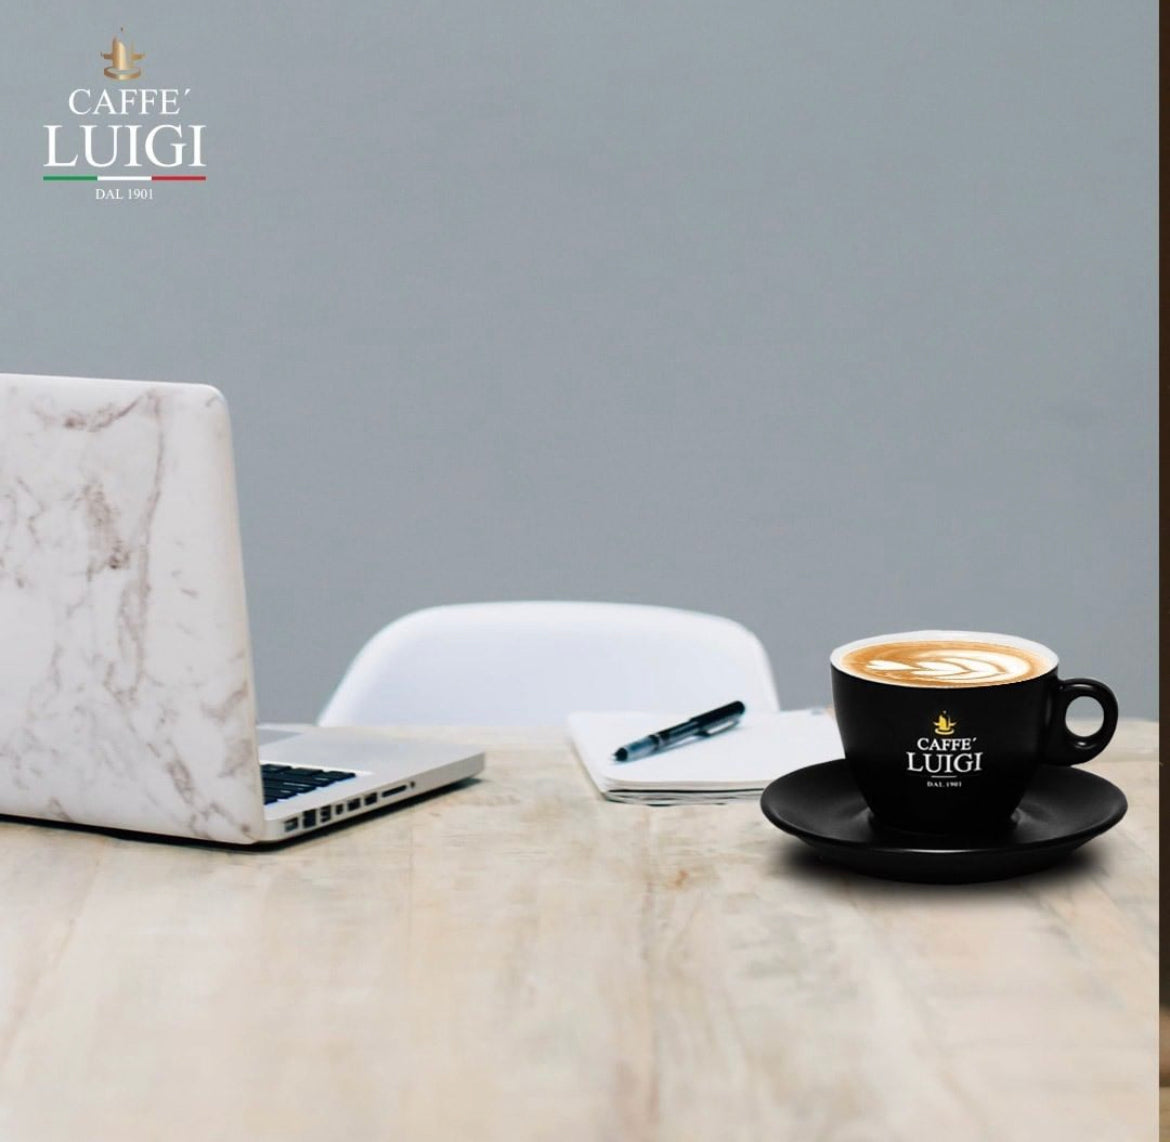 Espresso DOLCE Bohnen Beans 1Kg Caffe 'Luigi 100% Arabica + 1 Cappuccino Tasse Klein